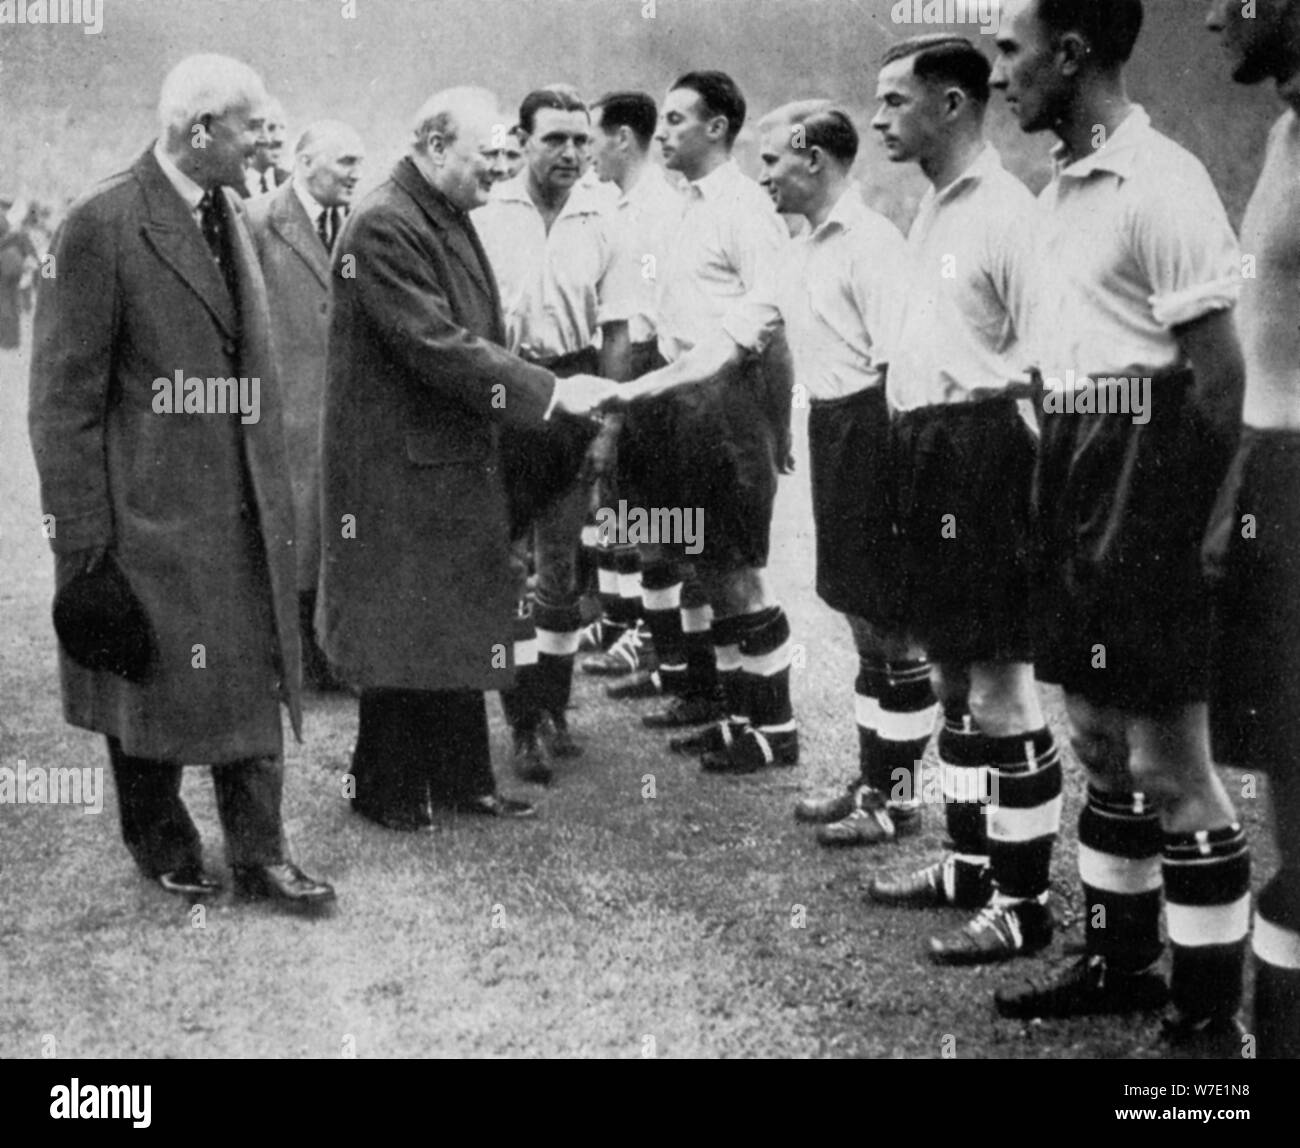 Winston Churchill accueille l'équipe anglaise de football, Wembley, Londres, octobre 1941.Artiste : London News Agency Banque D'Images